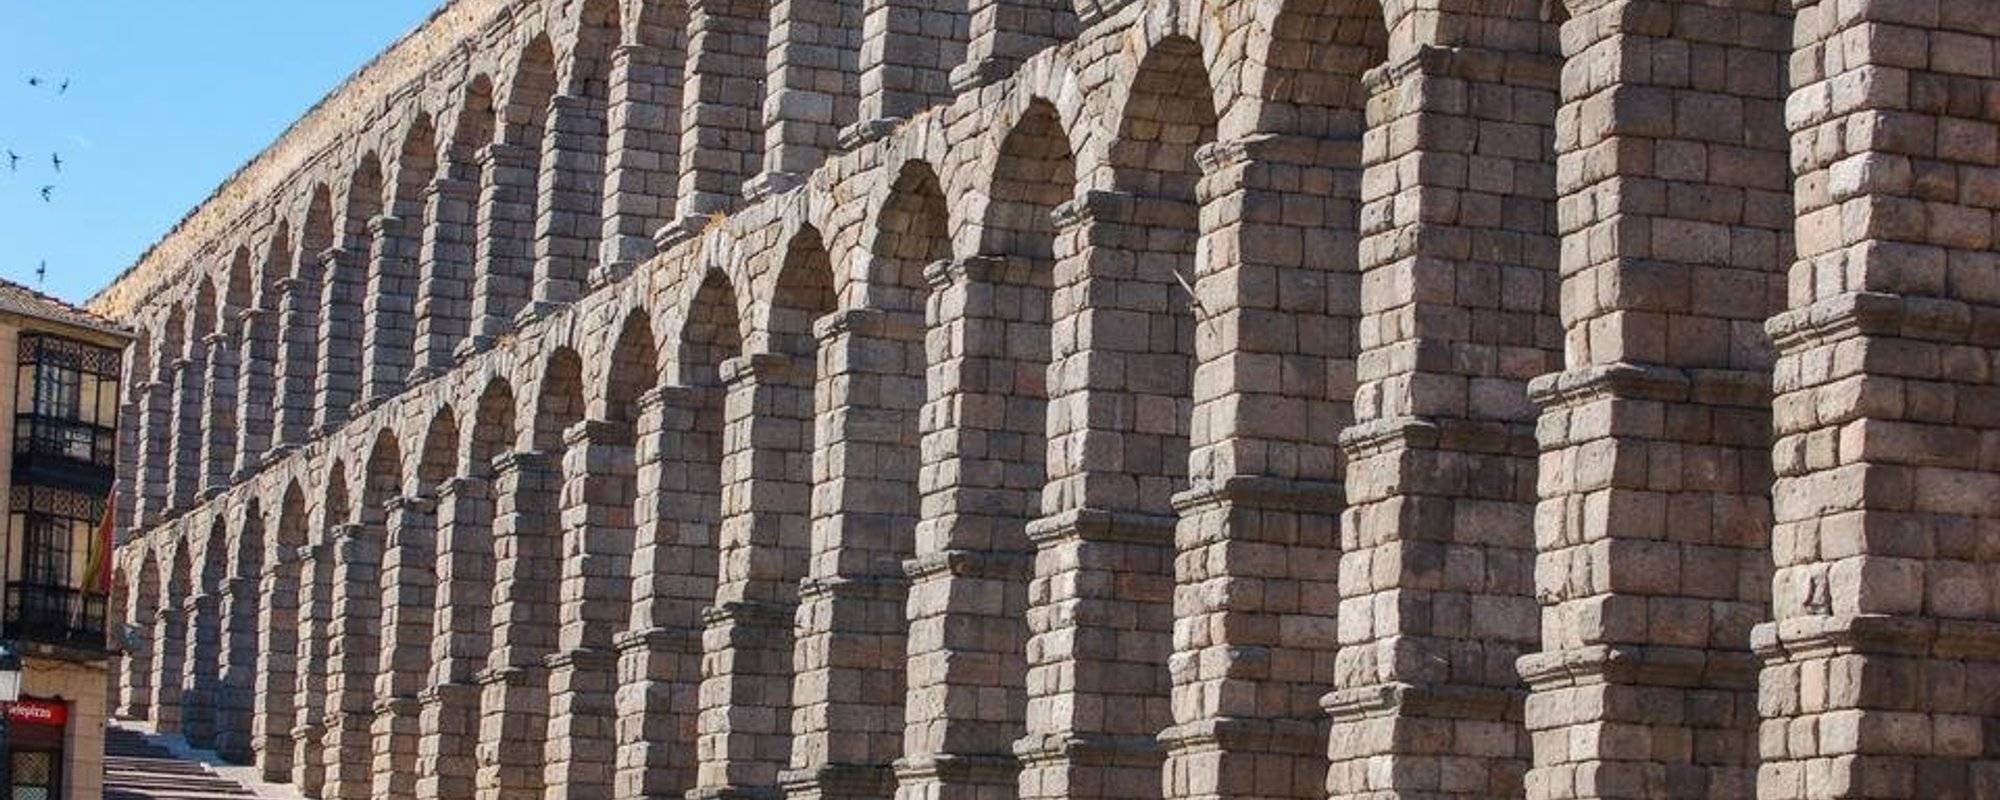 Segovia's Aqueduct and roast suckling pig  塞哥維亞古羅馬水道和烤乳豬